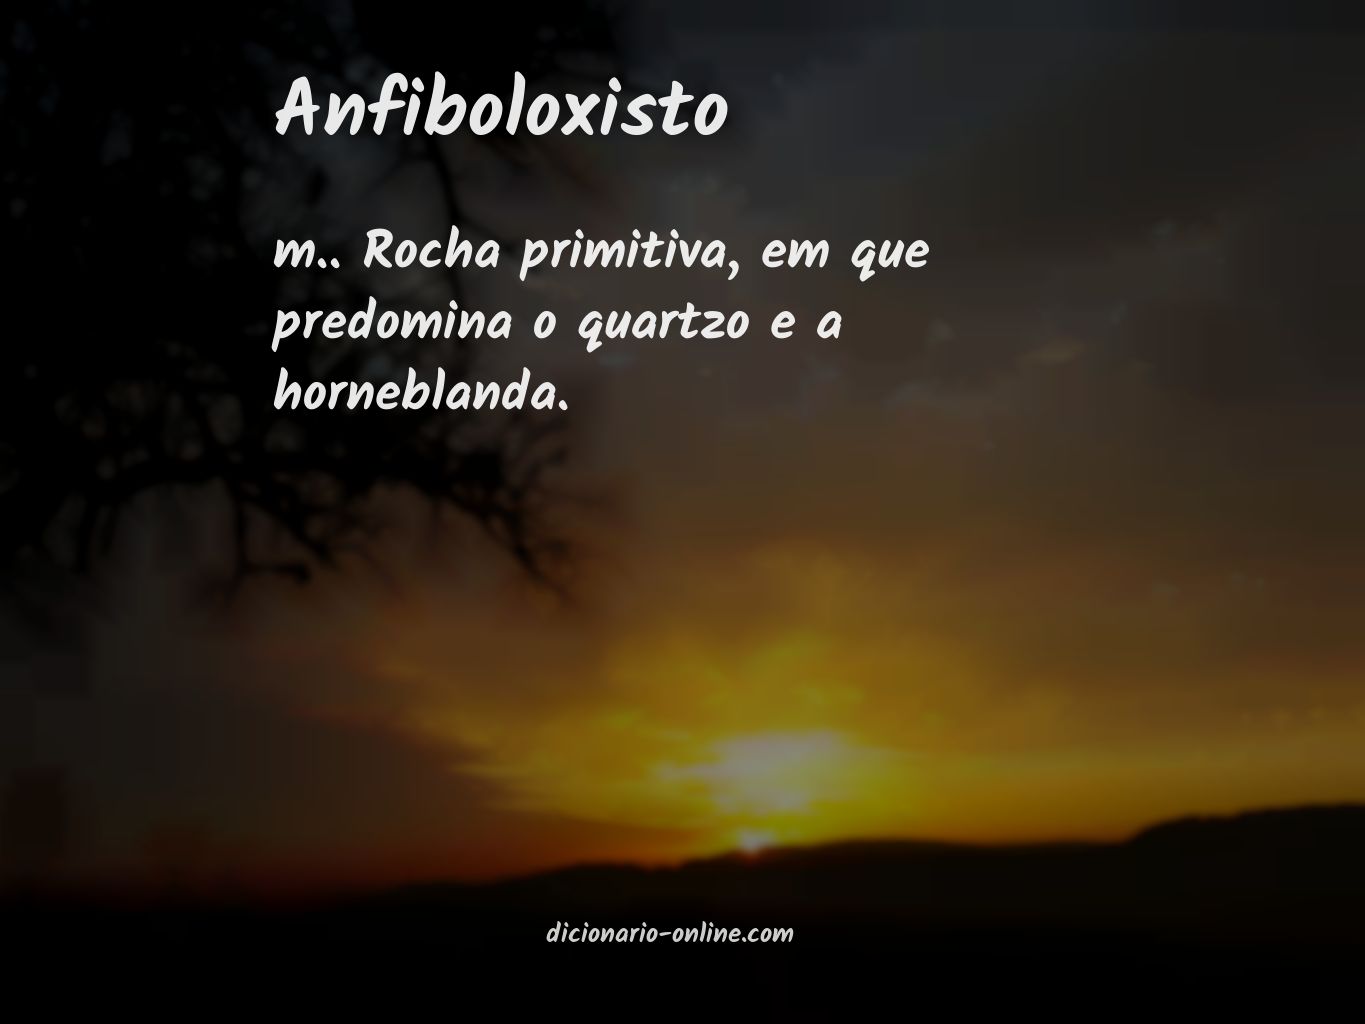 Significado de anfiboloxisto